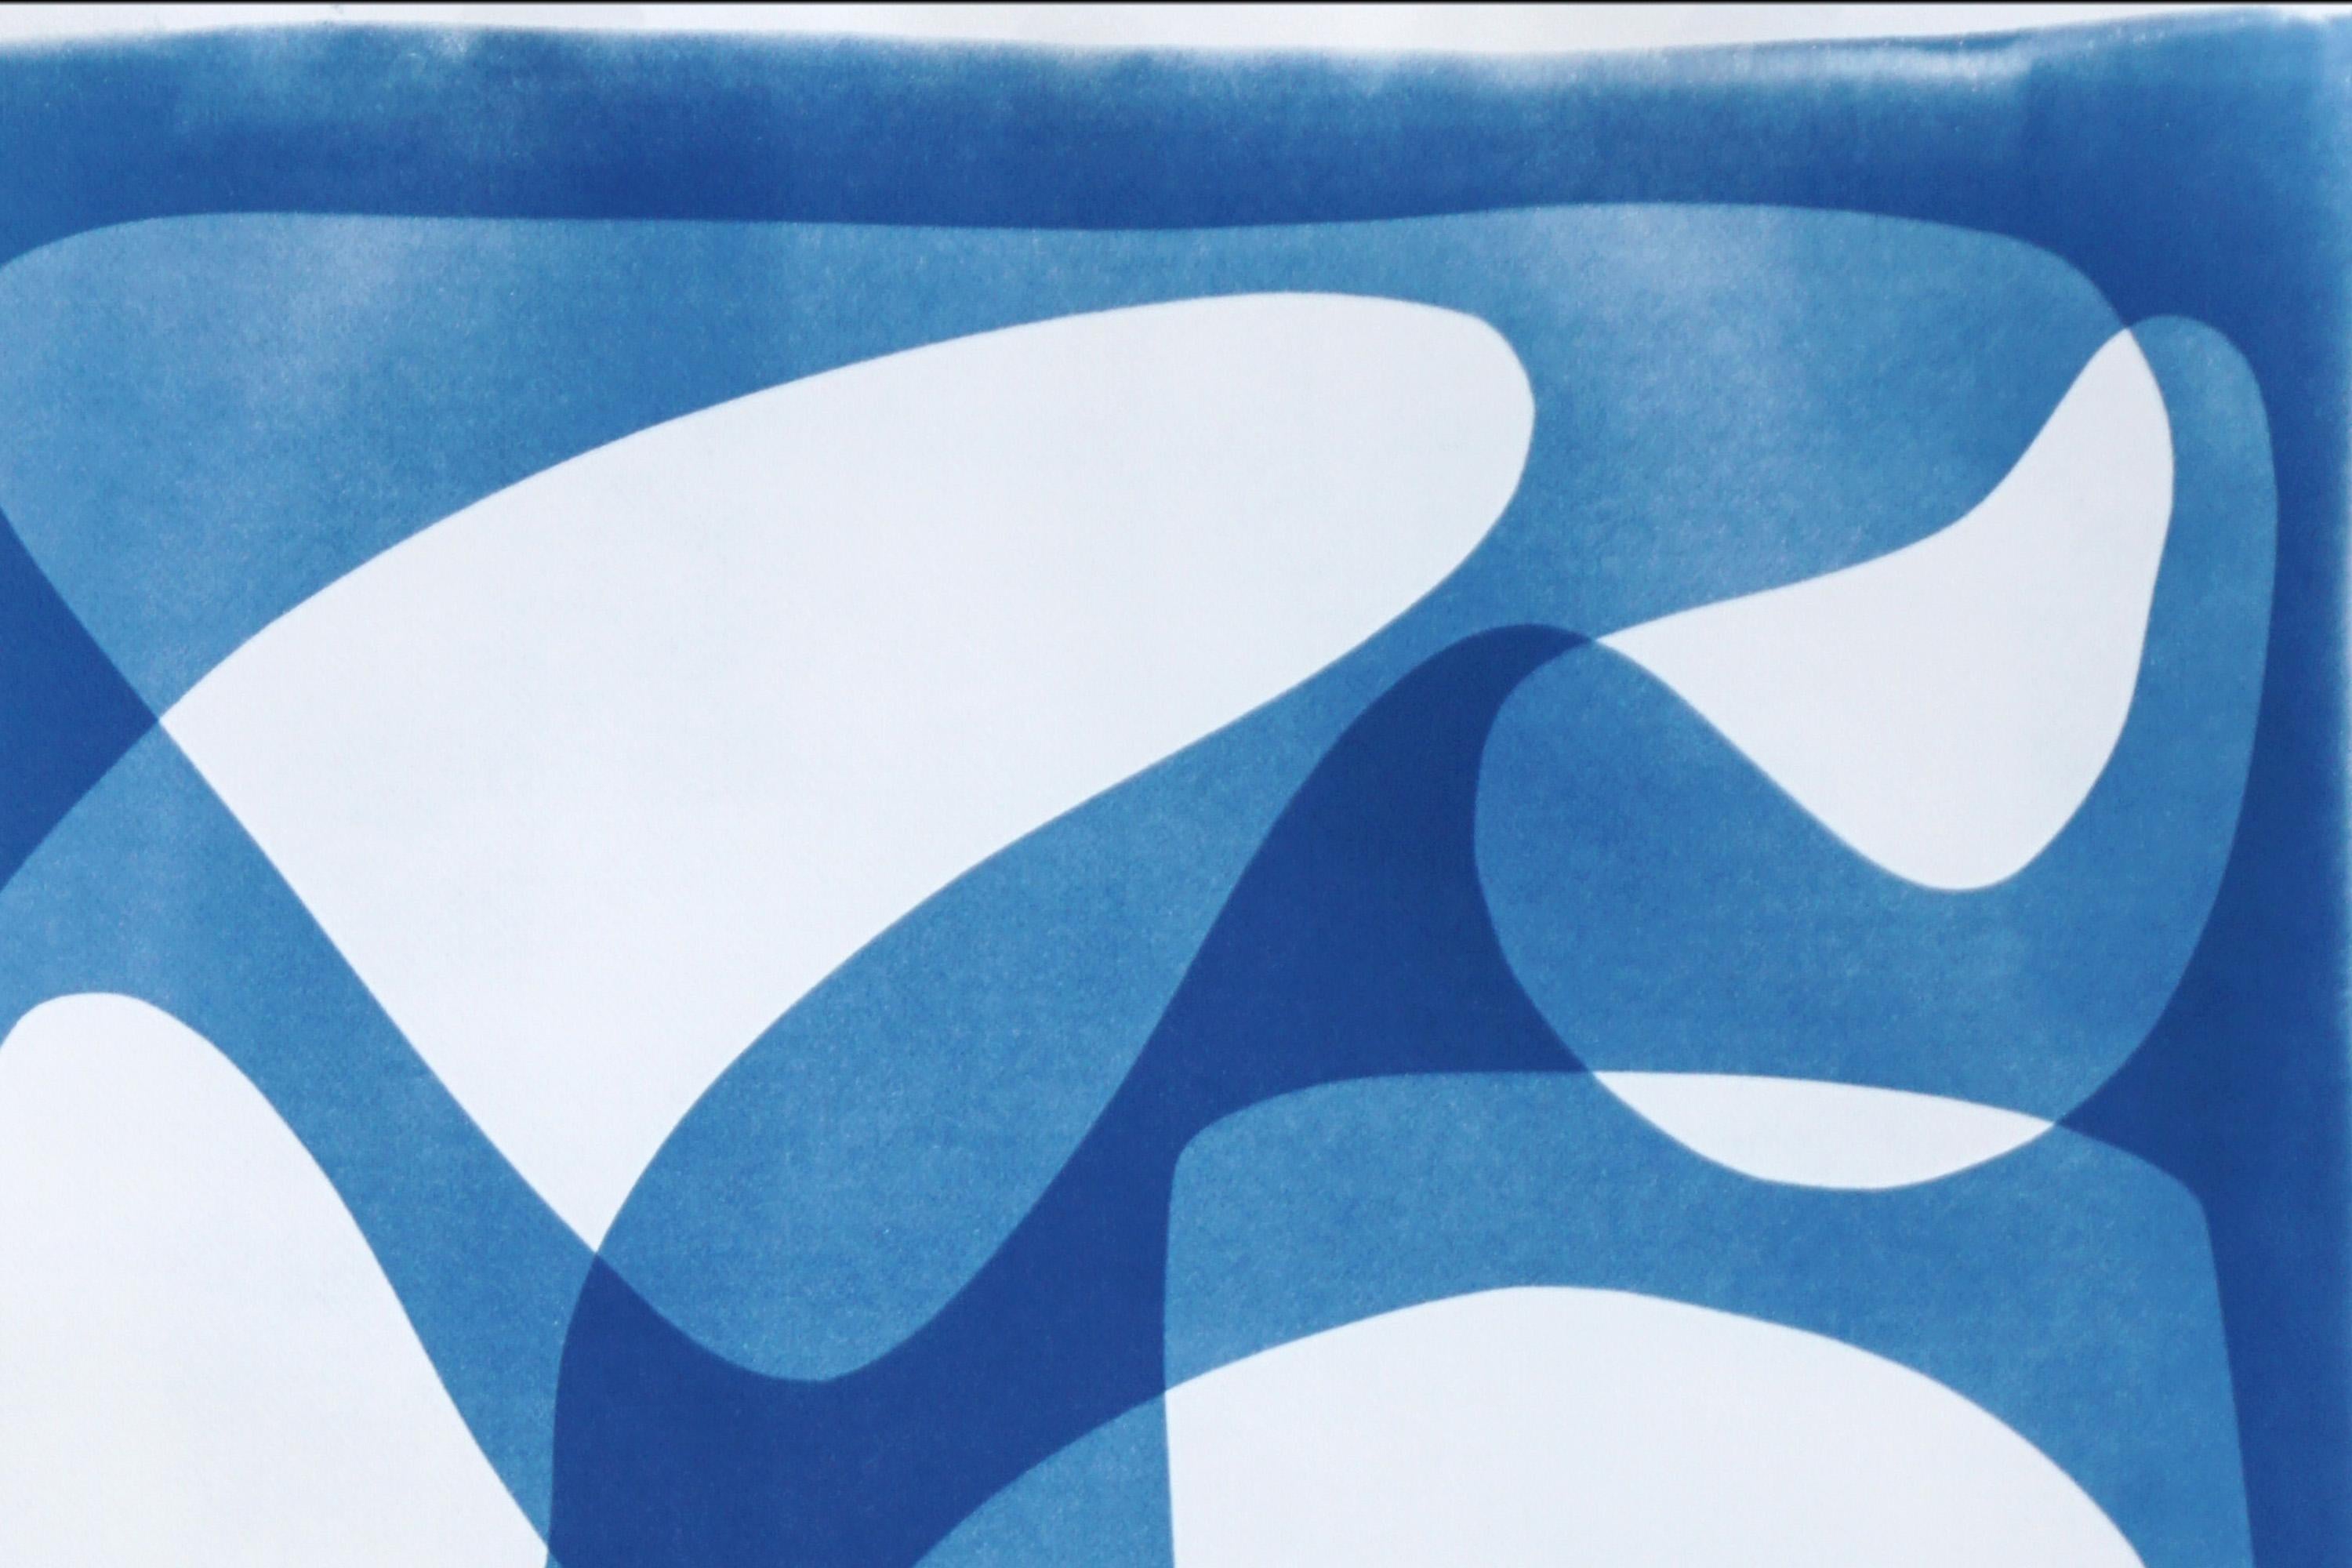 Formes modernes du milieu du siècle dernier en blanc et bleu, cyanotype fait à la main, monotype unique - Moderne Print par Kind of Cyan